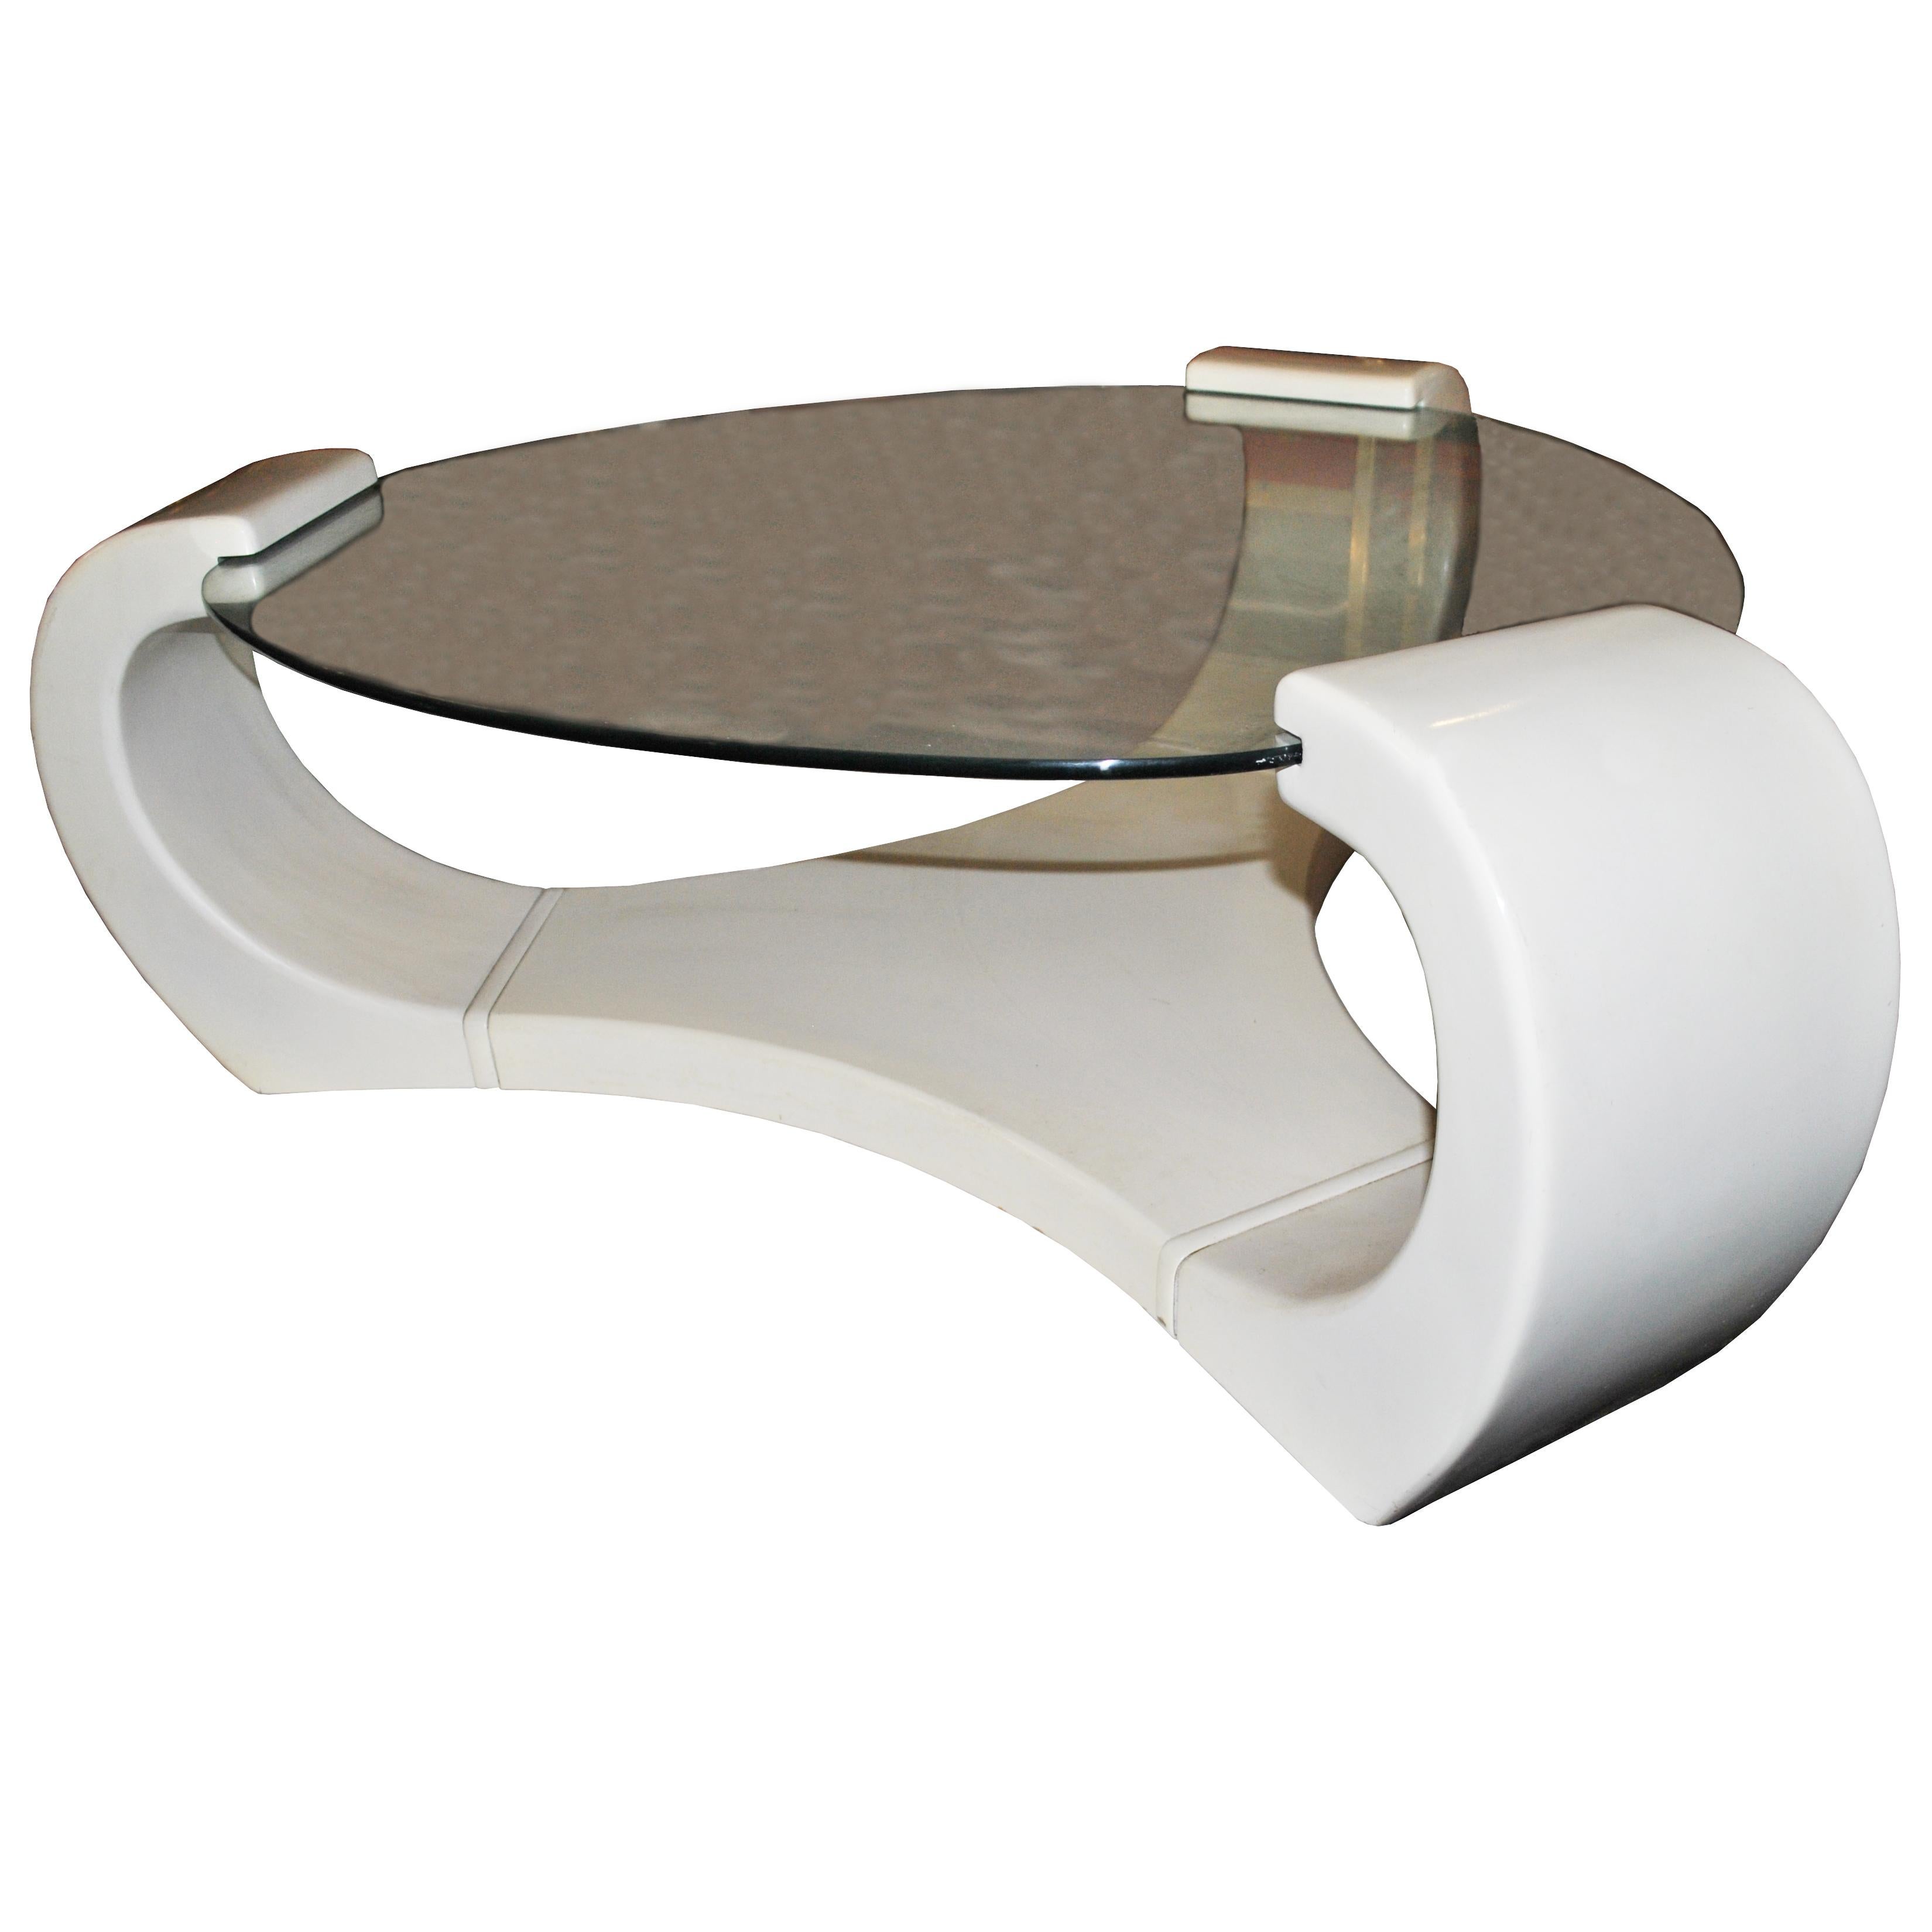 Ein moderner, skulpturaler Couchtisch aus weißem Lack mit einer runden Glasplatte. Ein Design, das an die Werke von Karl Springer erinnert.